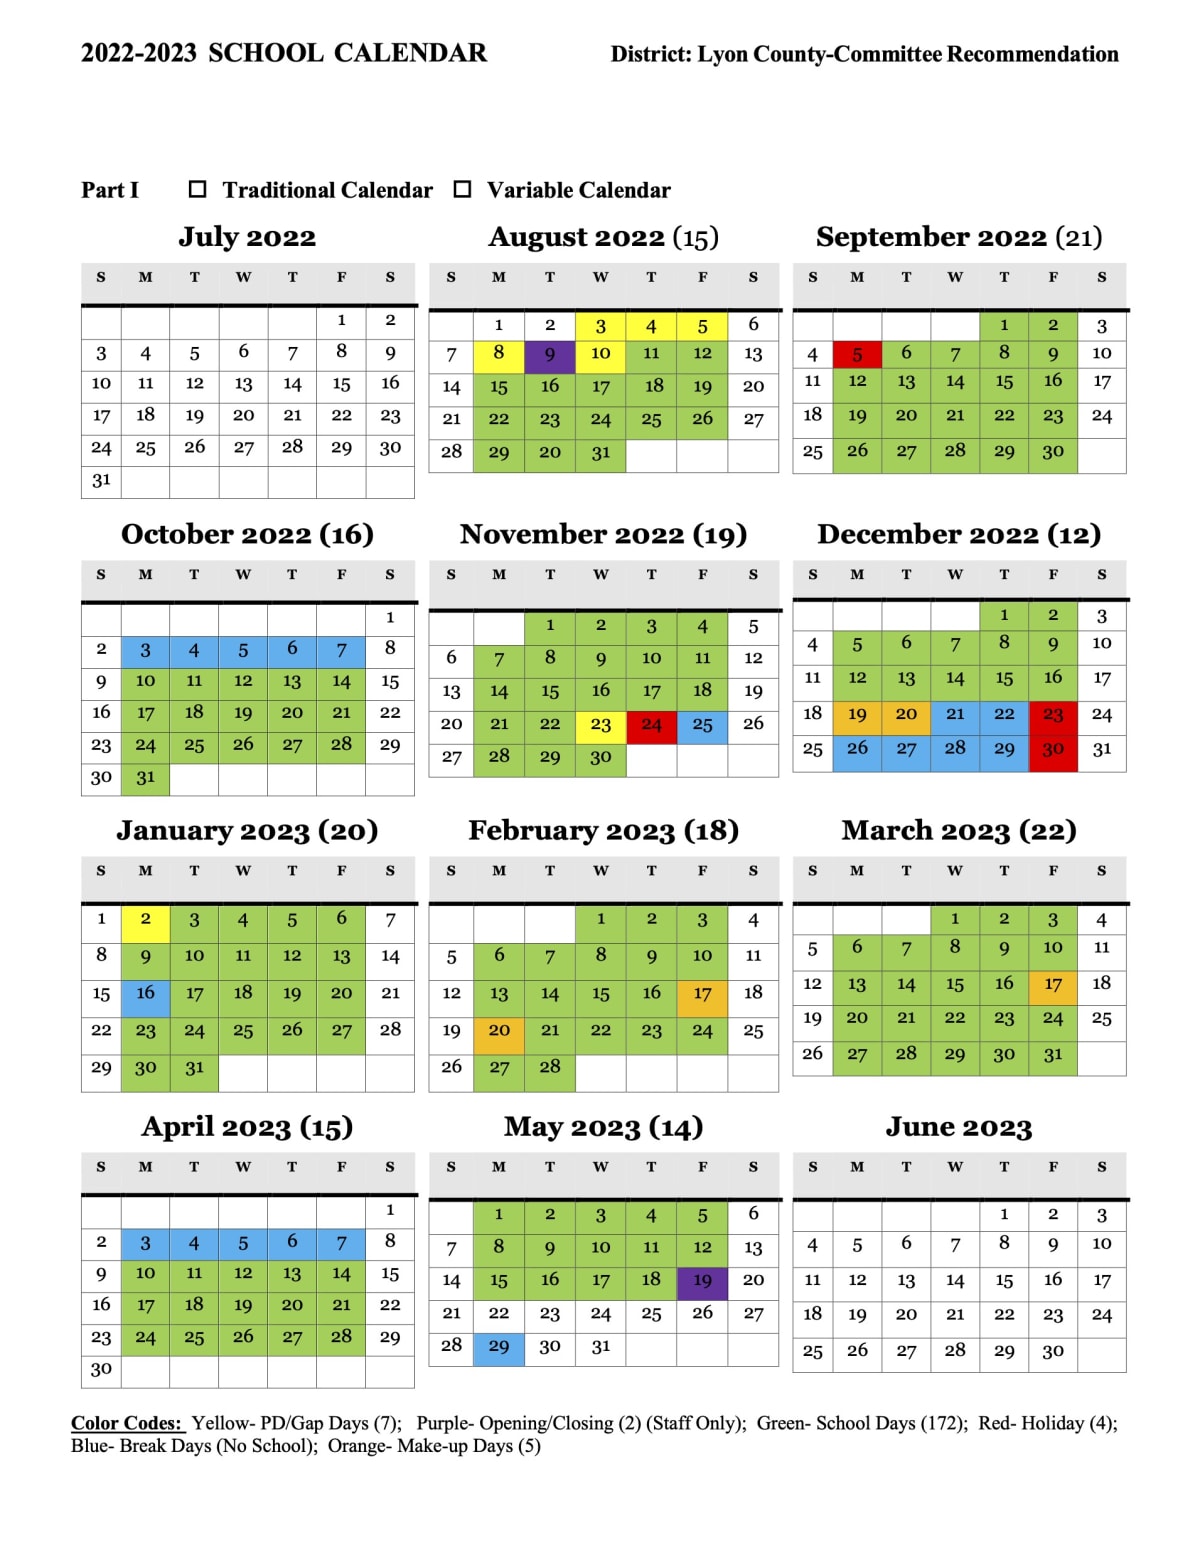 Lyon County Schools Calendar 2023 and 2024